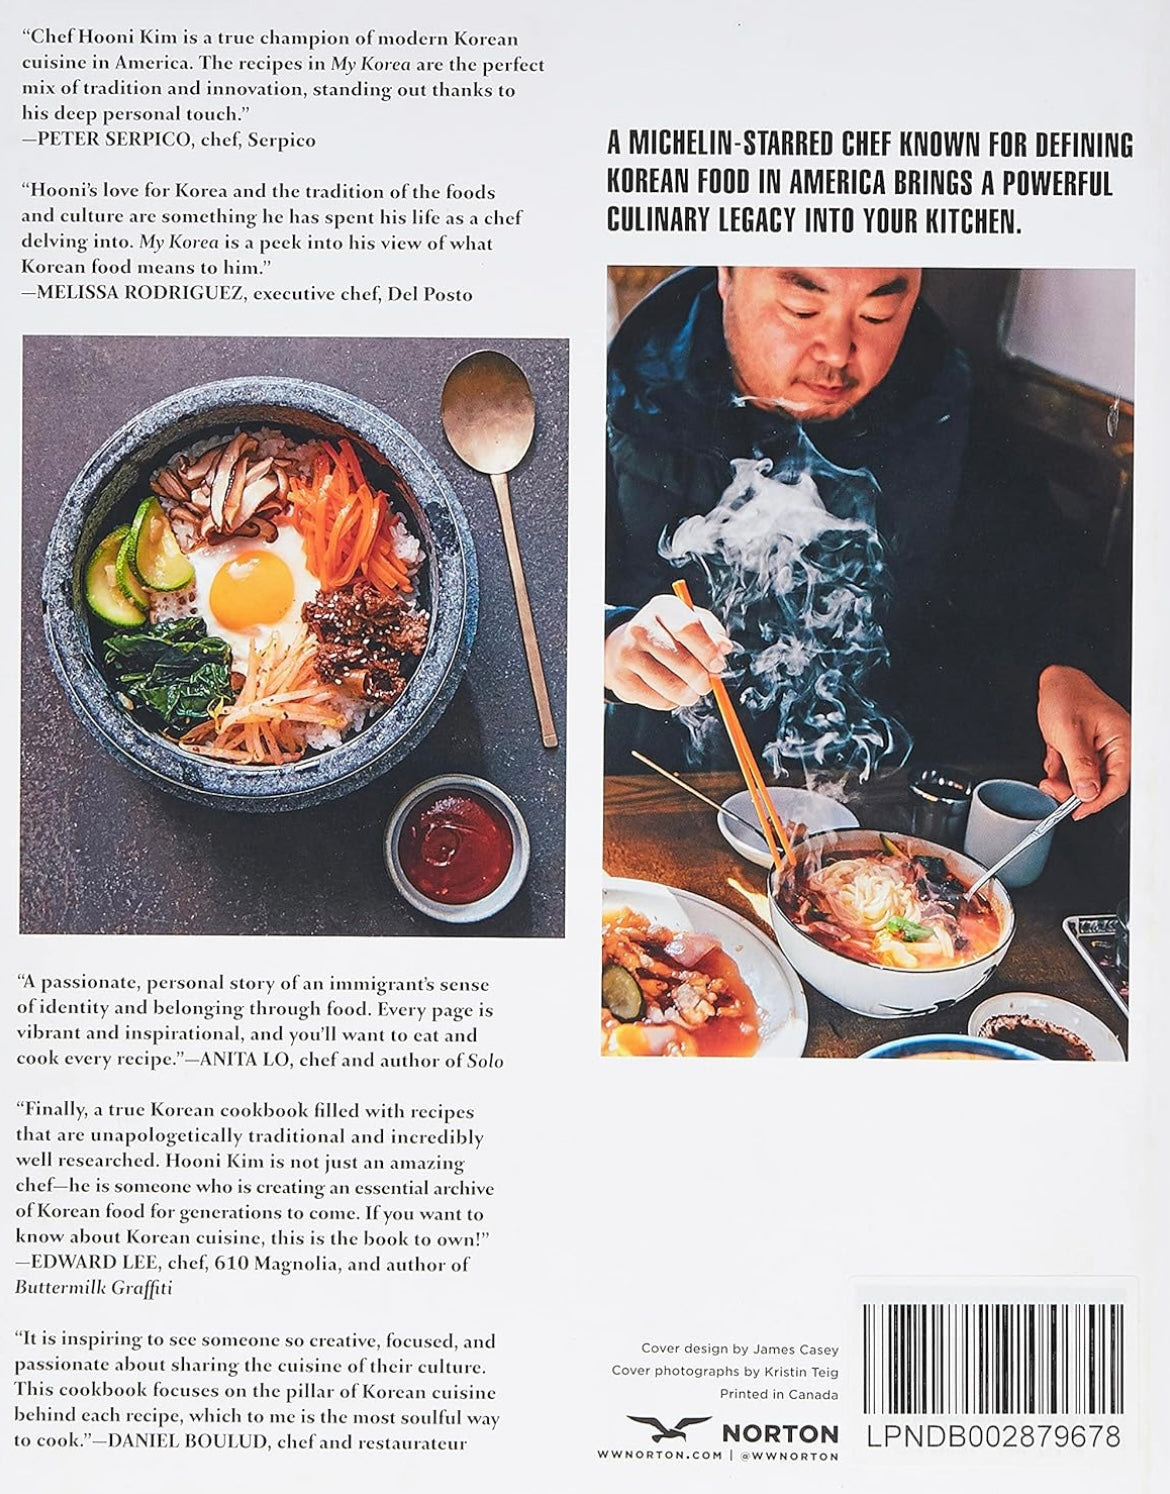 My Korea - Chef Hooni Kim's Cookbook (Autographed)